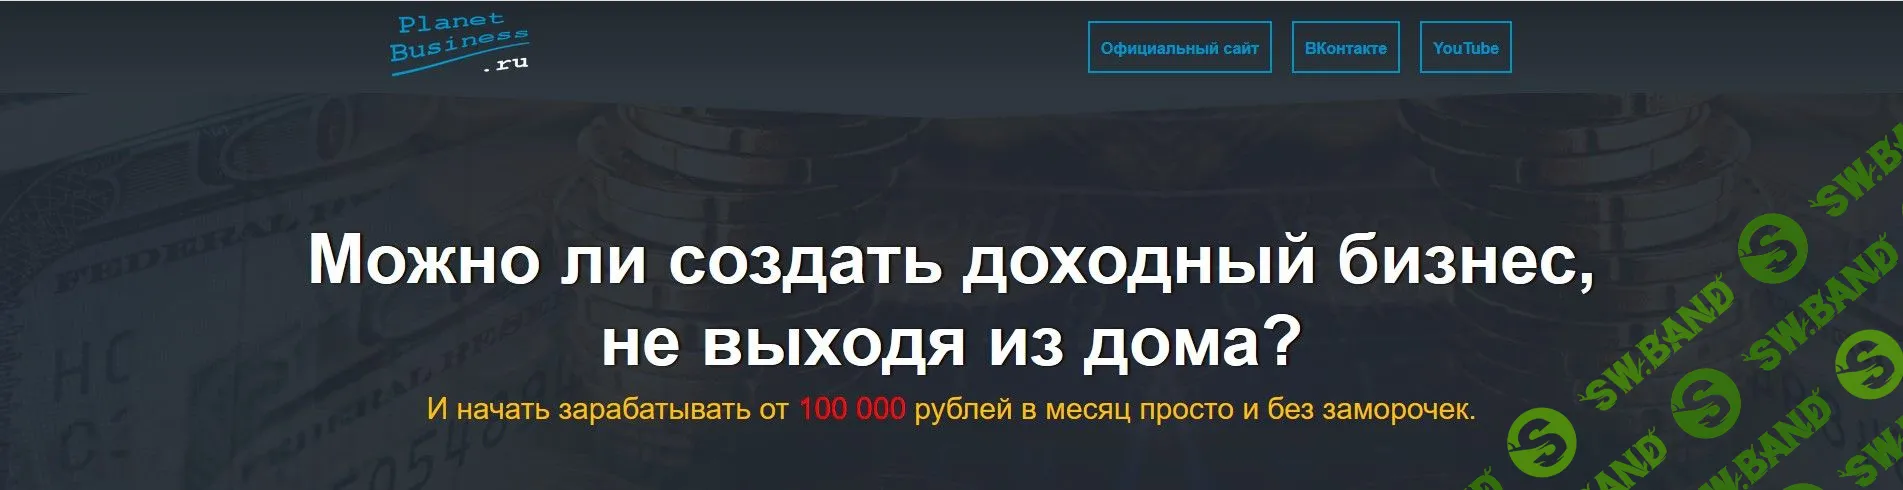 [Игорь Пахомов] Гермес - Начинай зарабатывать от 100 000 рублей в месяц просто и без заморочек